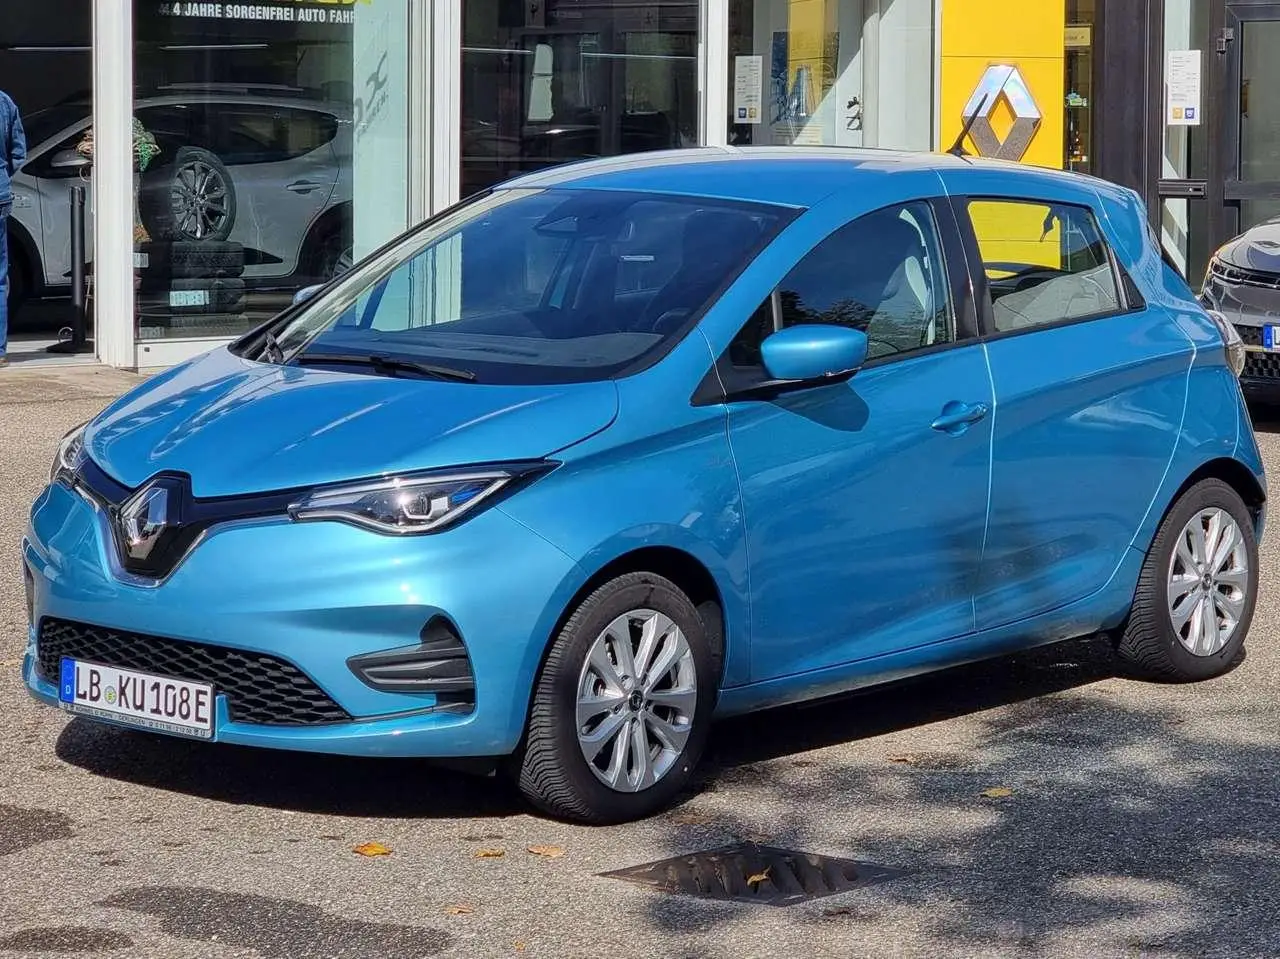 Photo 1 : Renault Zoe 2021 Electric